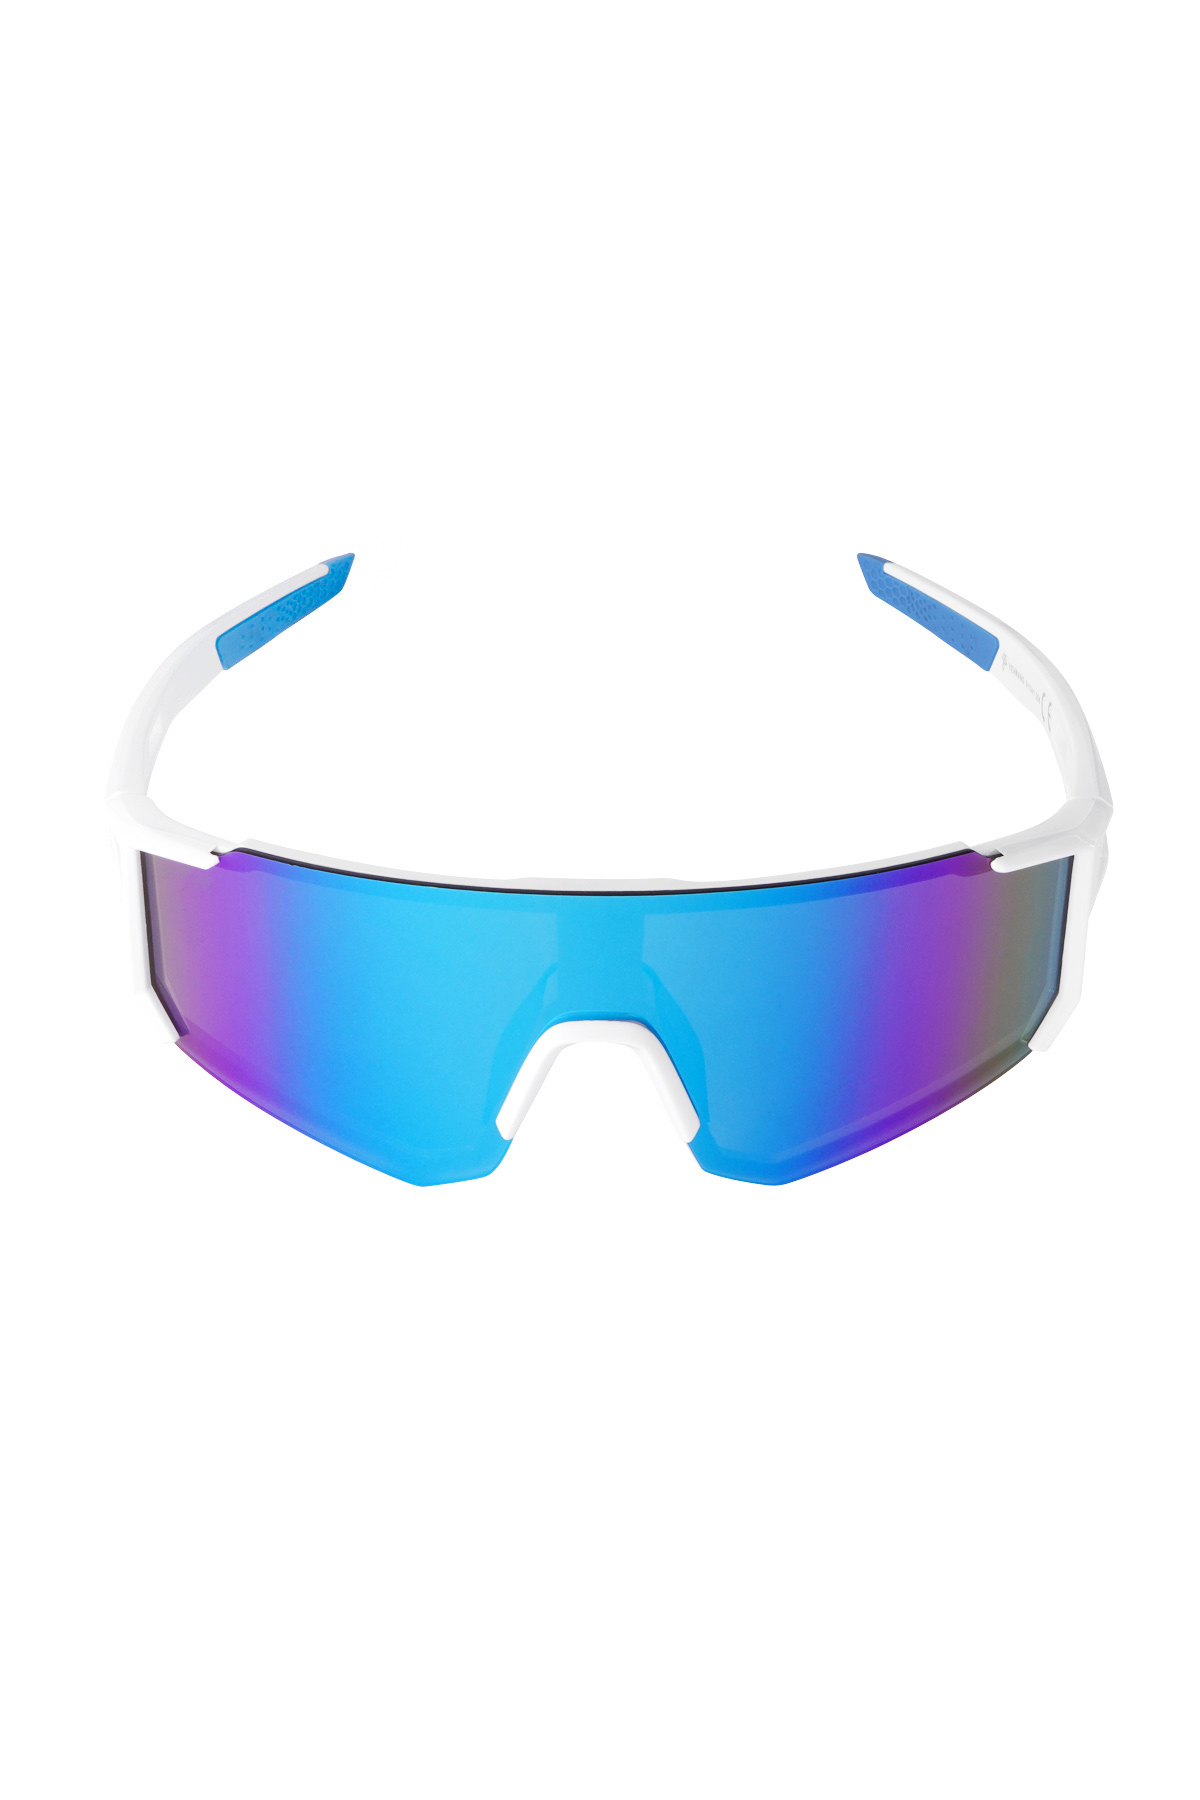 Sunglasses future - white/blue h5 Picture5